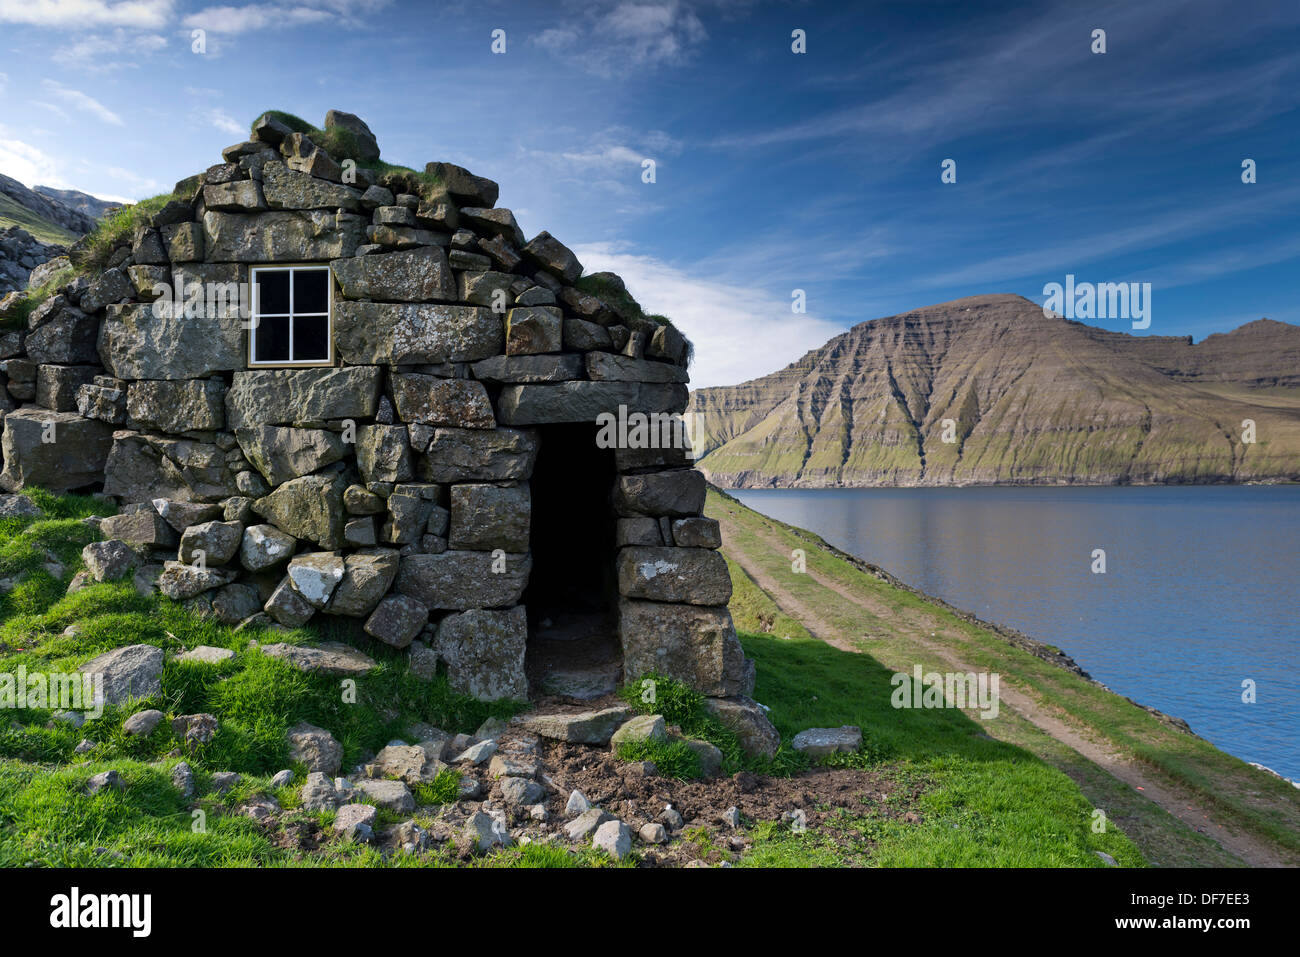 Old stone house on a fjord, Borðoy, Norðoyar, Faroe Islands, Denmark Stock Photo